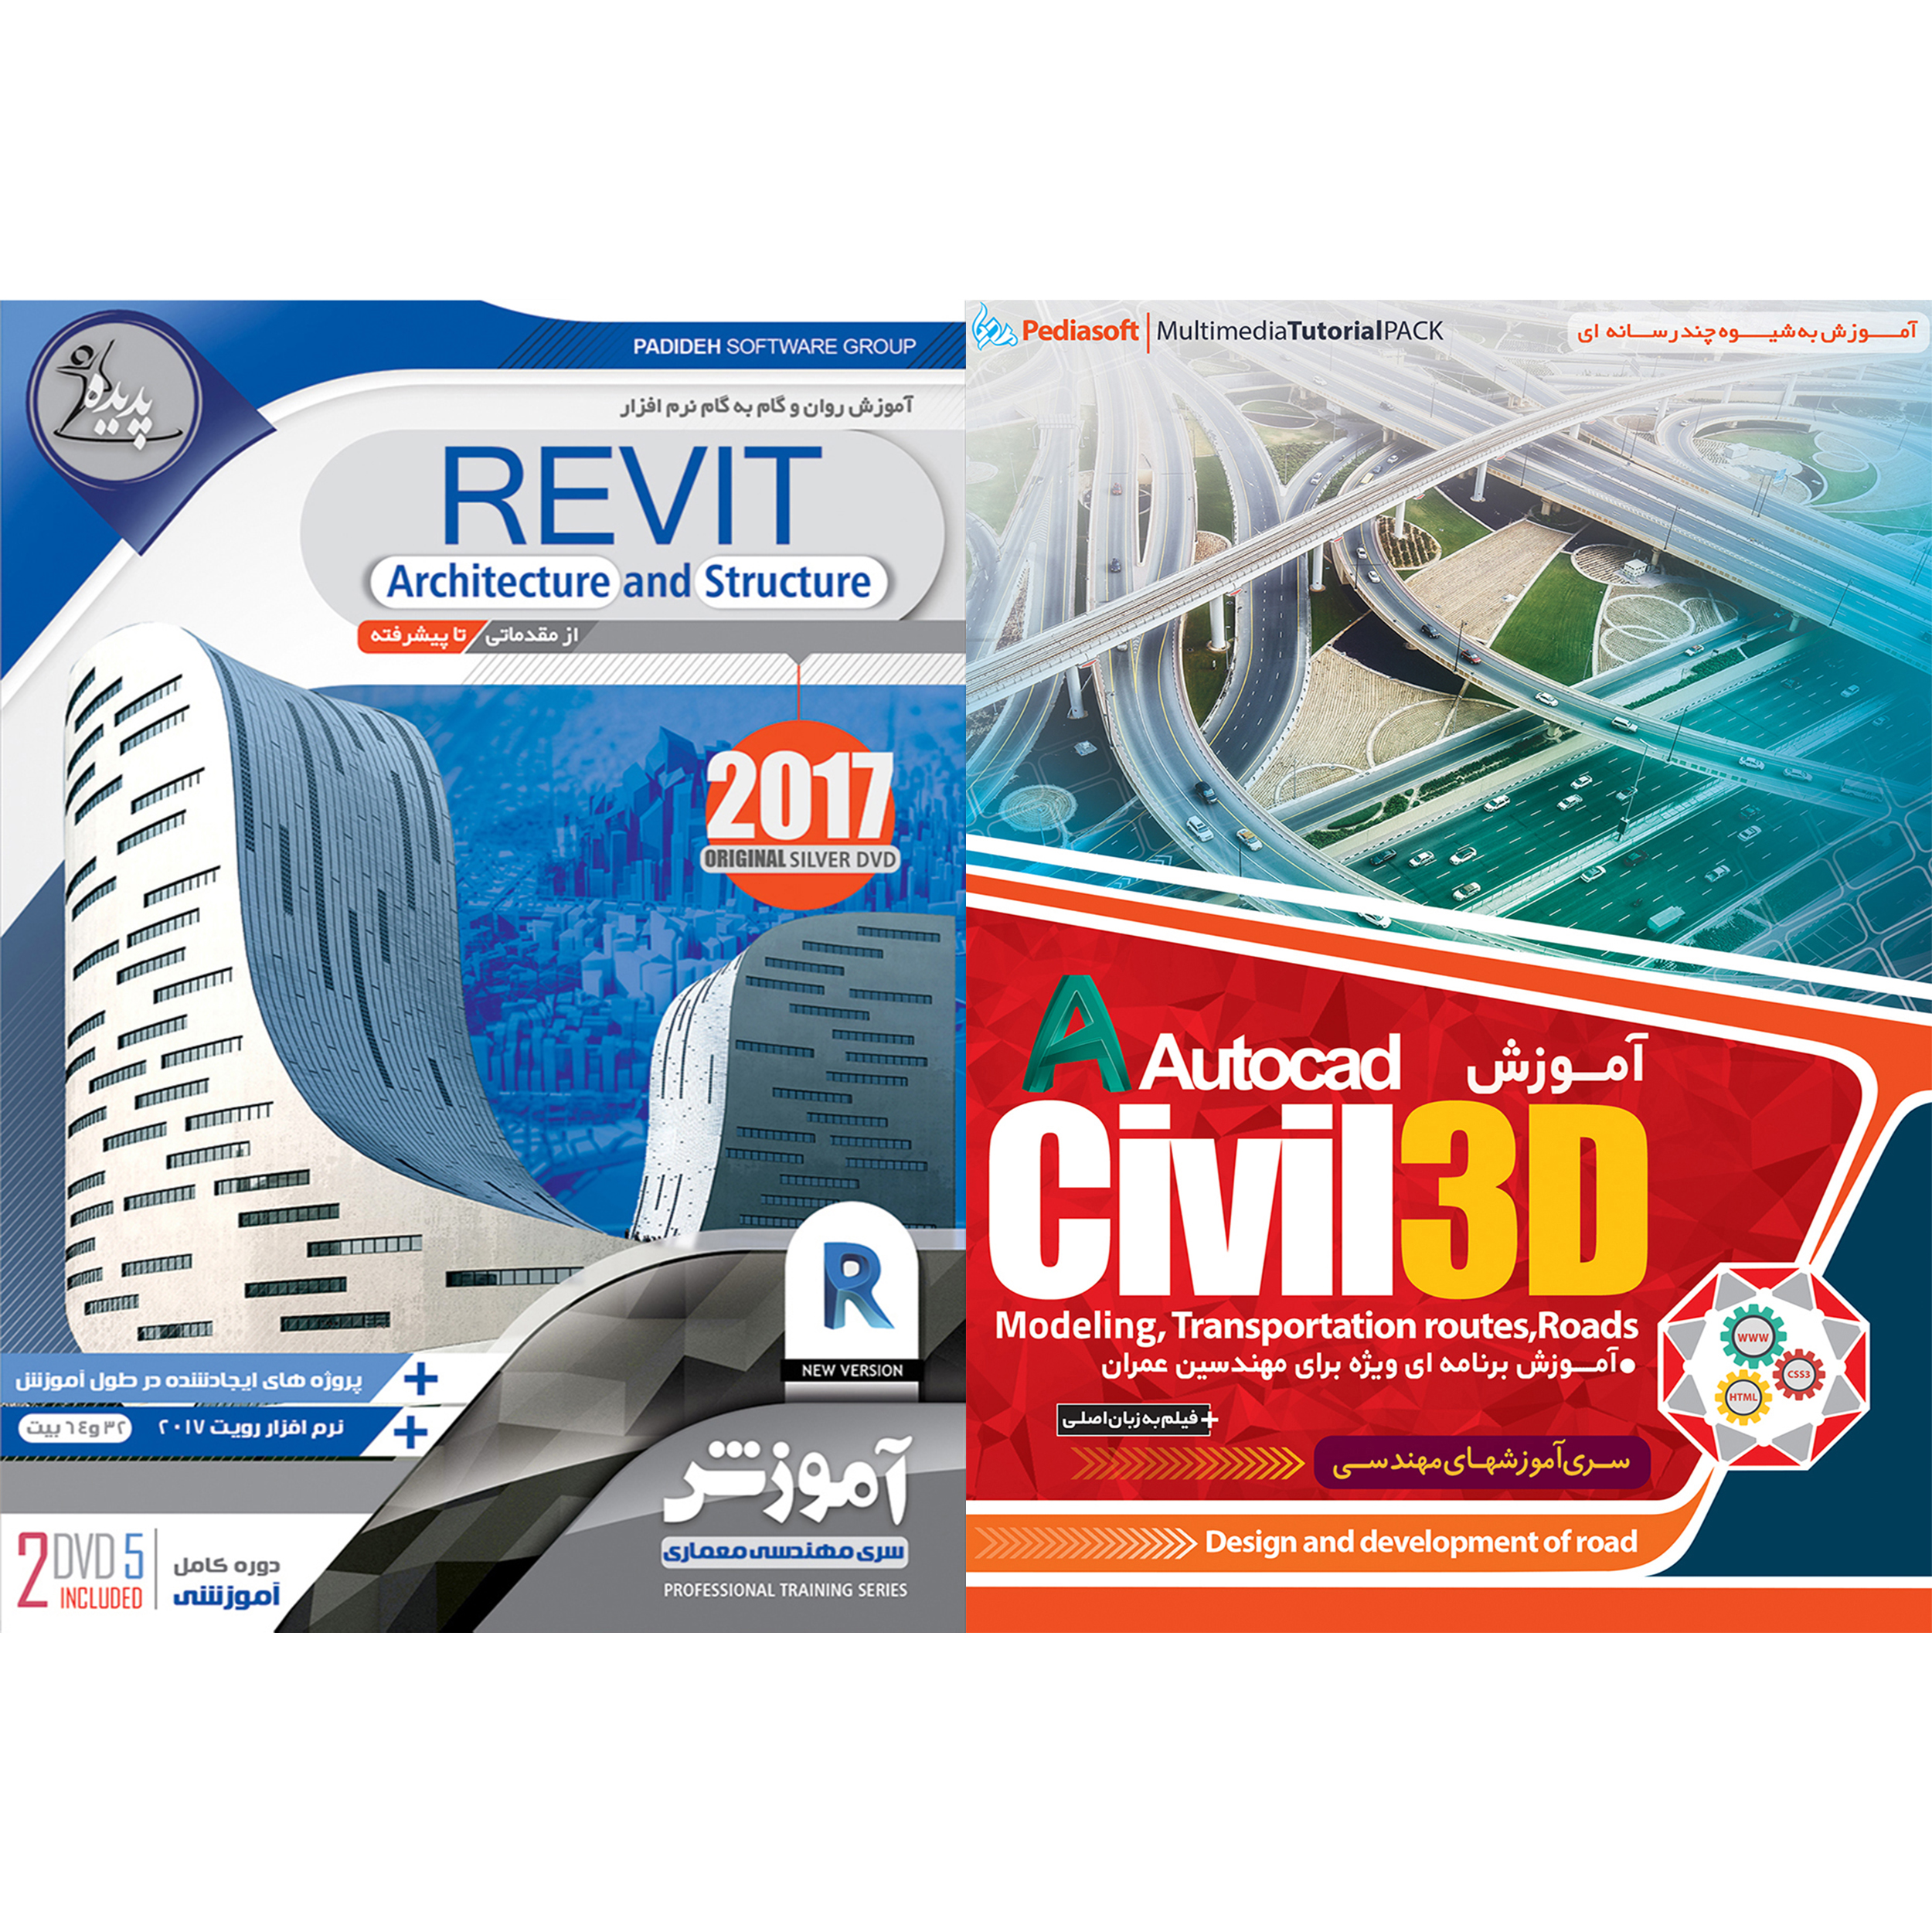 نرم افزار آموزش CIVIL 3D نشر پدیا سافت به همراه نرم افزار آموزش REVIT نشر پدیده